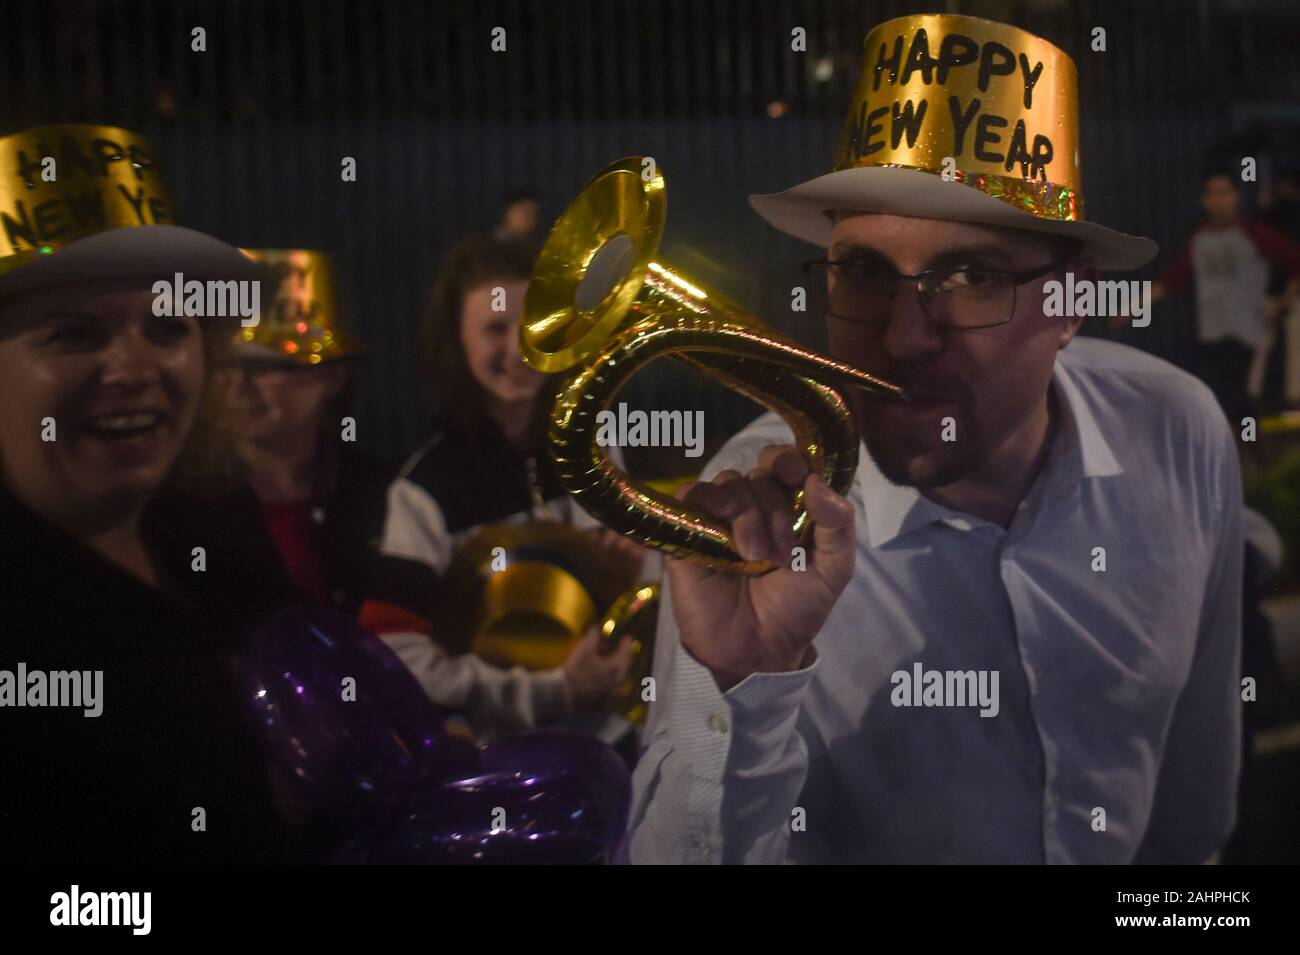 Jakarta, Indonésie. 31 Dec, 2019. Un homme souffle une trompette de papier dans la rue pour célébrer la nouvelle année à venir à Jakarta, Indonésie, le 31 décembre 2019. Ti'Kuncahya Crédit : B./Xinhua/Alamy Live News Banque D'Images